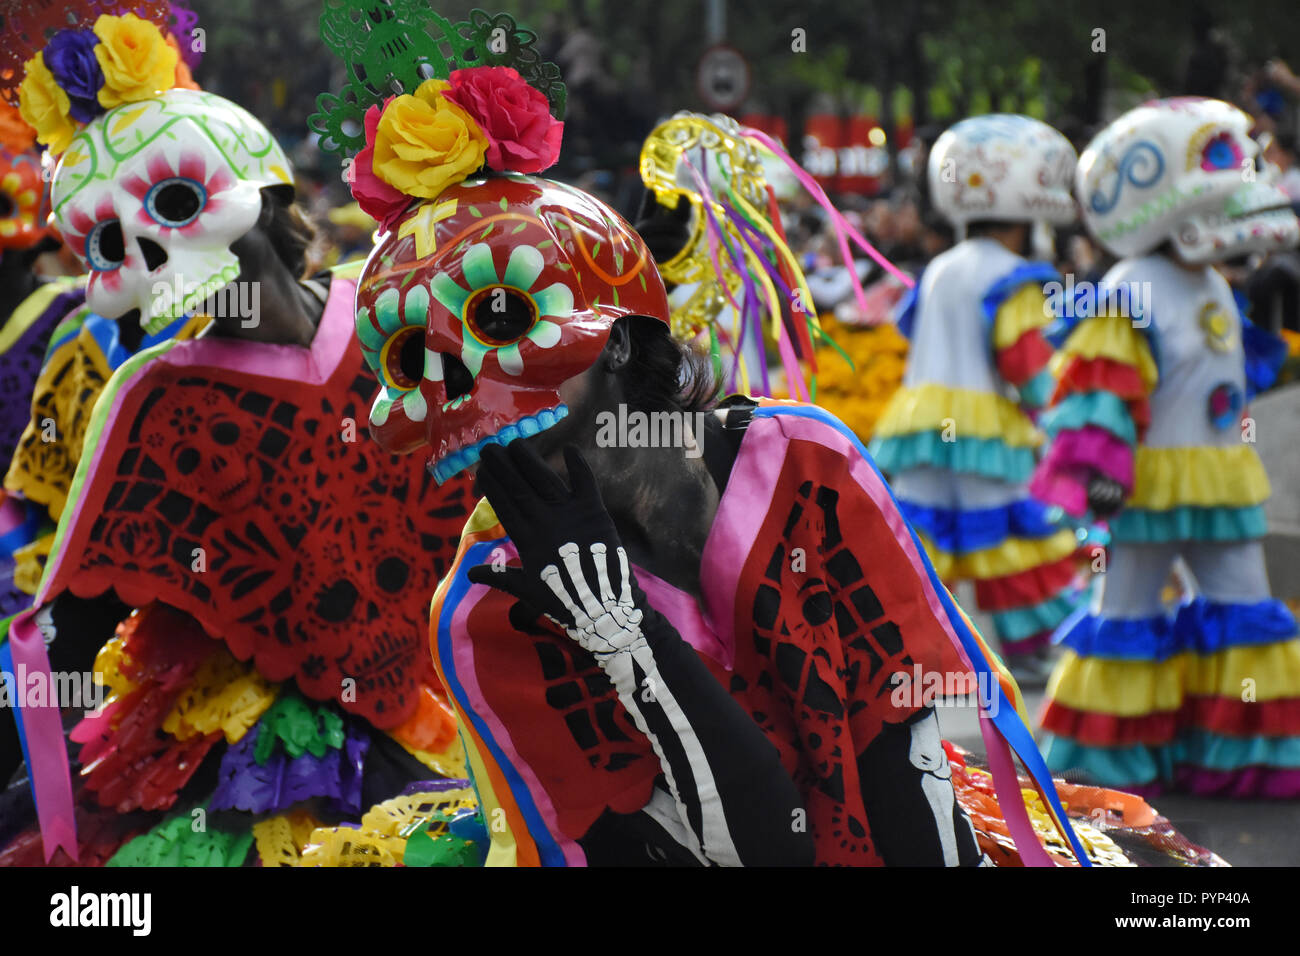 I partecipanti si vede vestito come i morti durante la parata. La gente a prendere parte alla Giornata annuale dei Morti Parade come parte delle celebrazioni del Messico è il giorno dei morti festival presso l'angelo dell'indipendenza in Città del Messico. Foto Stock